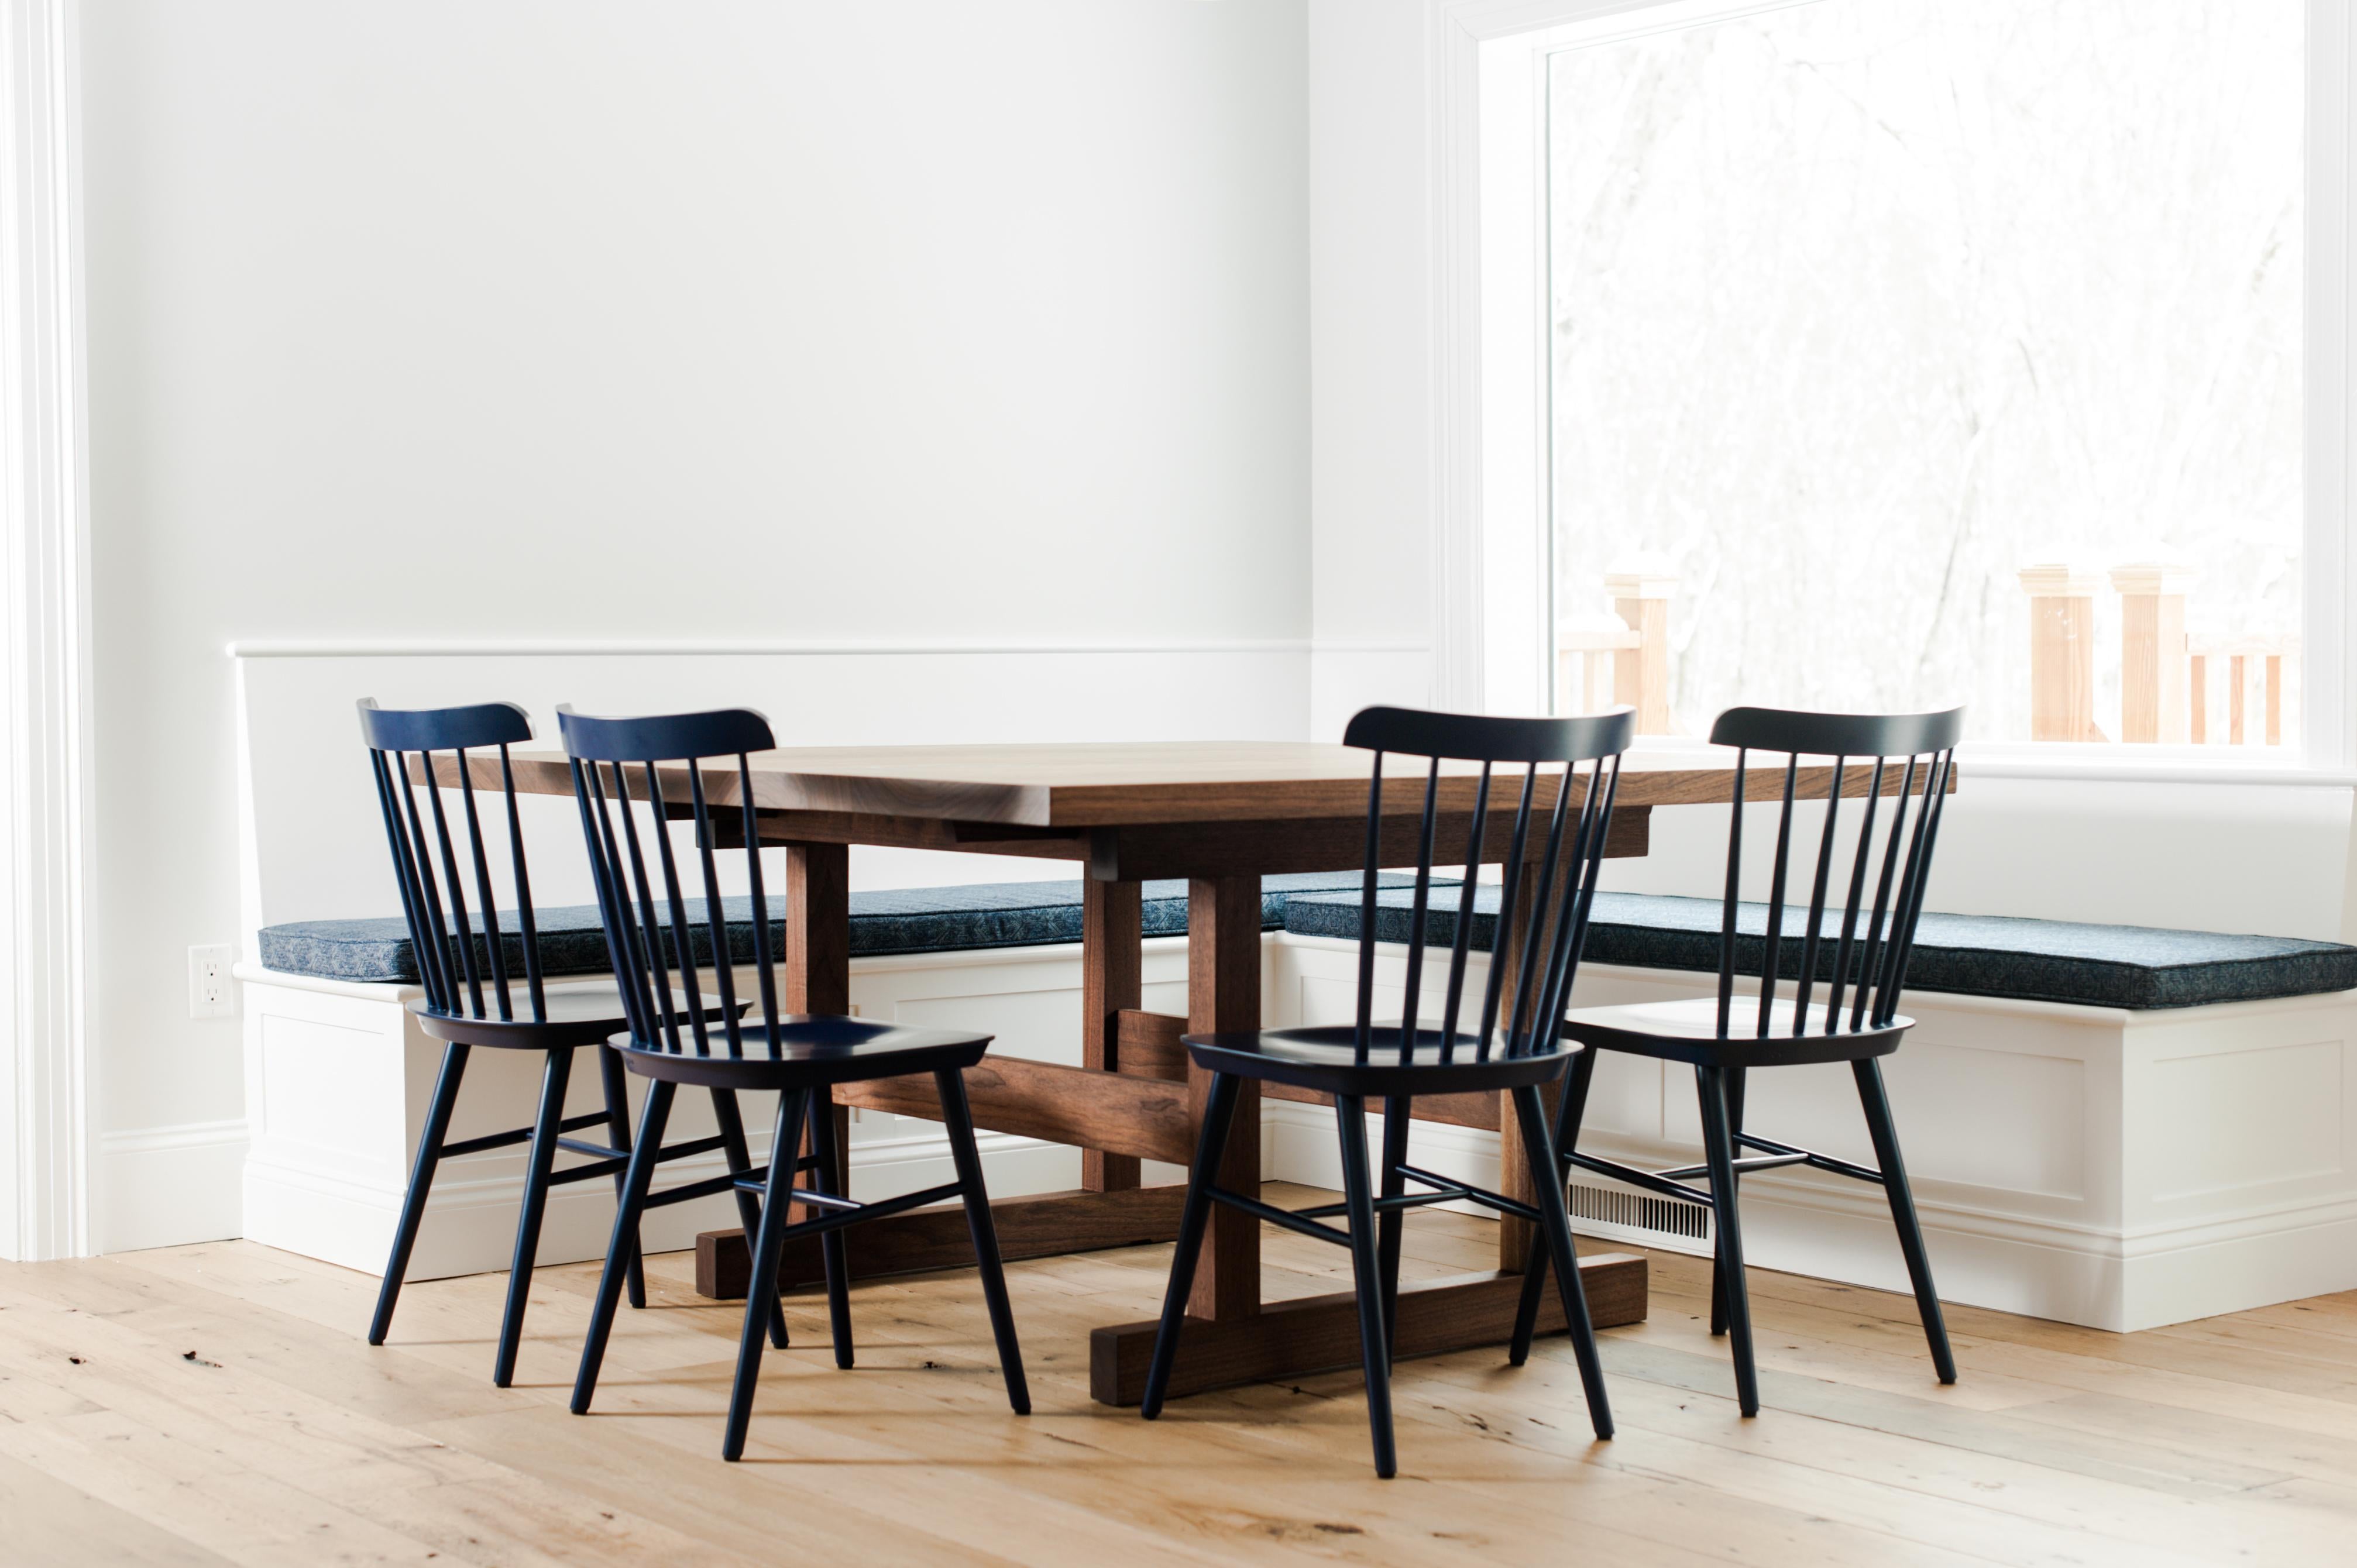 Der Weston-Esstisch ist ein zeitgenössischer Tisch mit Gestell. Die Platte ist aus massivem schwarzem Nussbaumholz gefertigt, das wir mit Bedacht aus der Region beziehen. Der Sockel ist ebenfalls aus schwarzem Nussbaum mit Schlitz und Zapfen